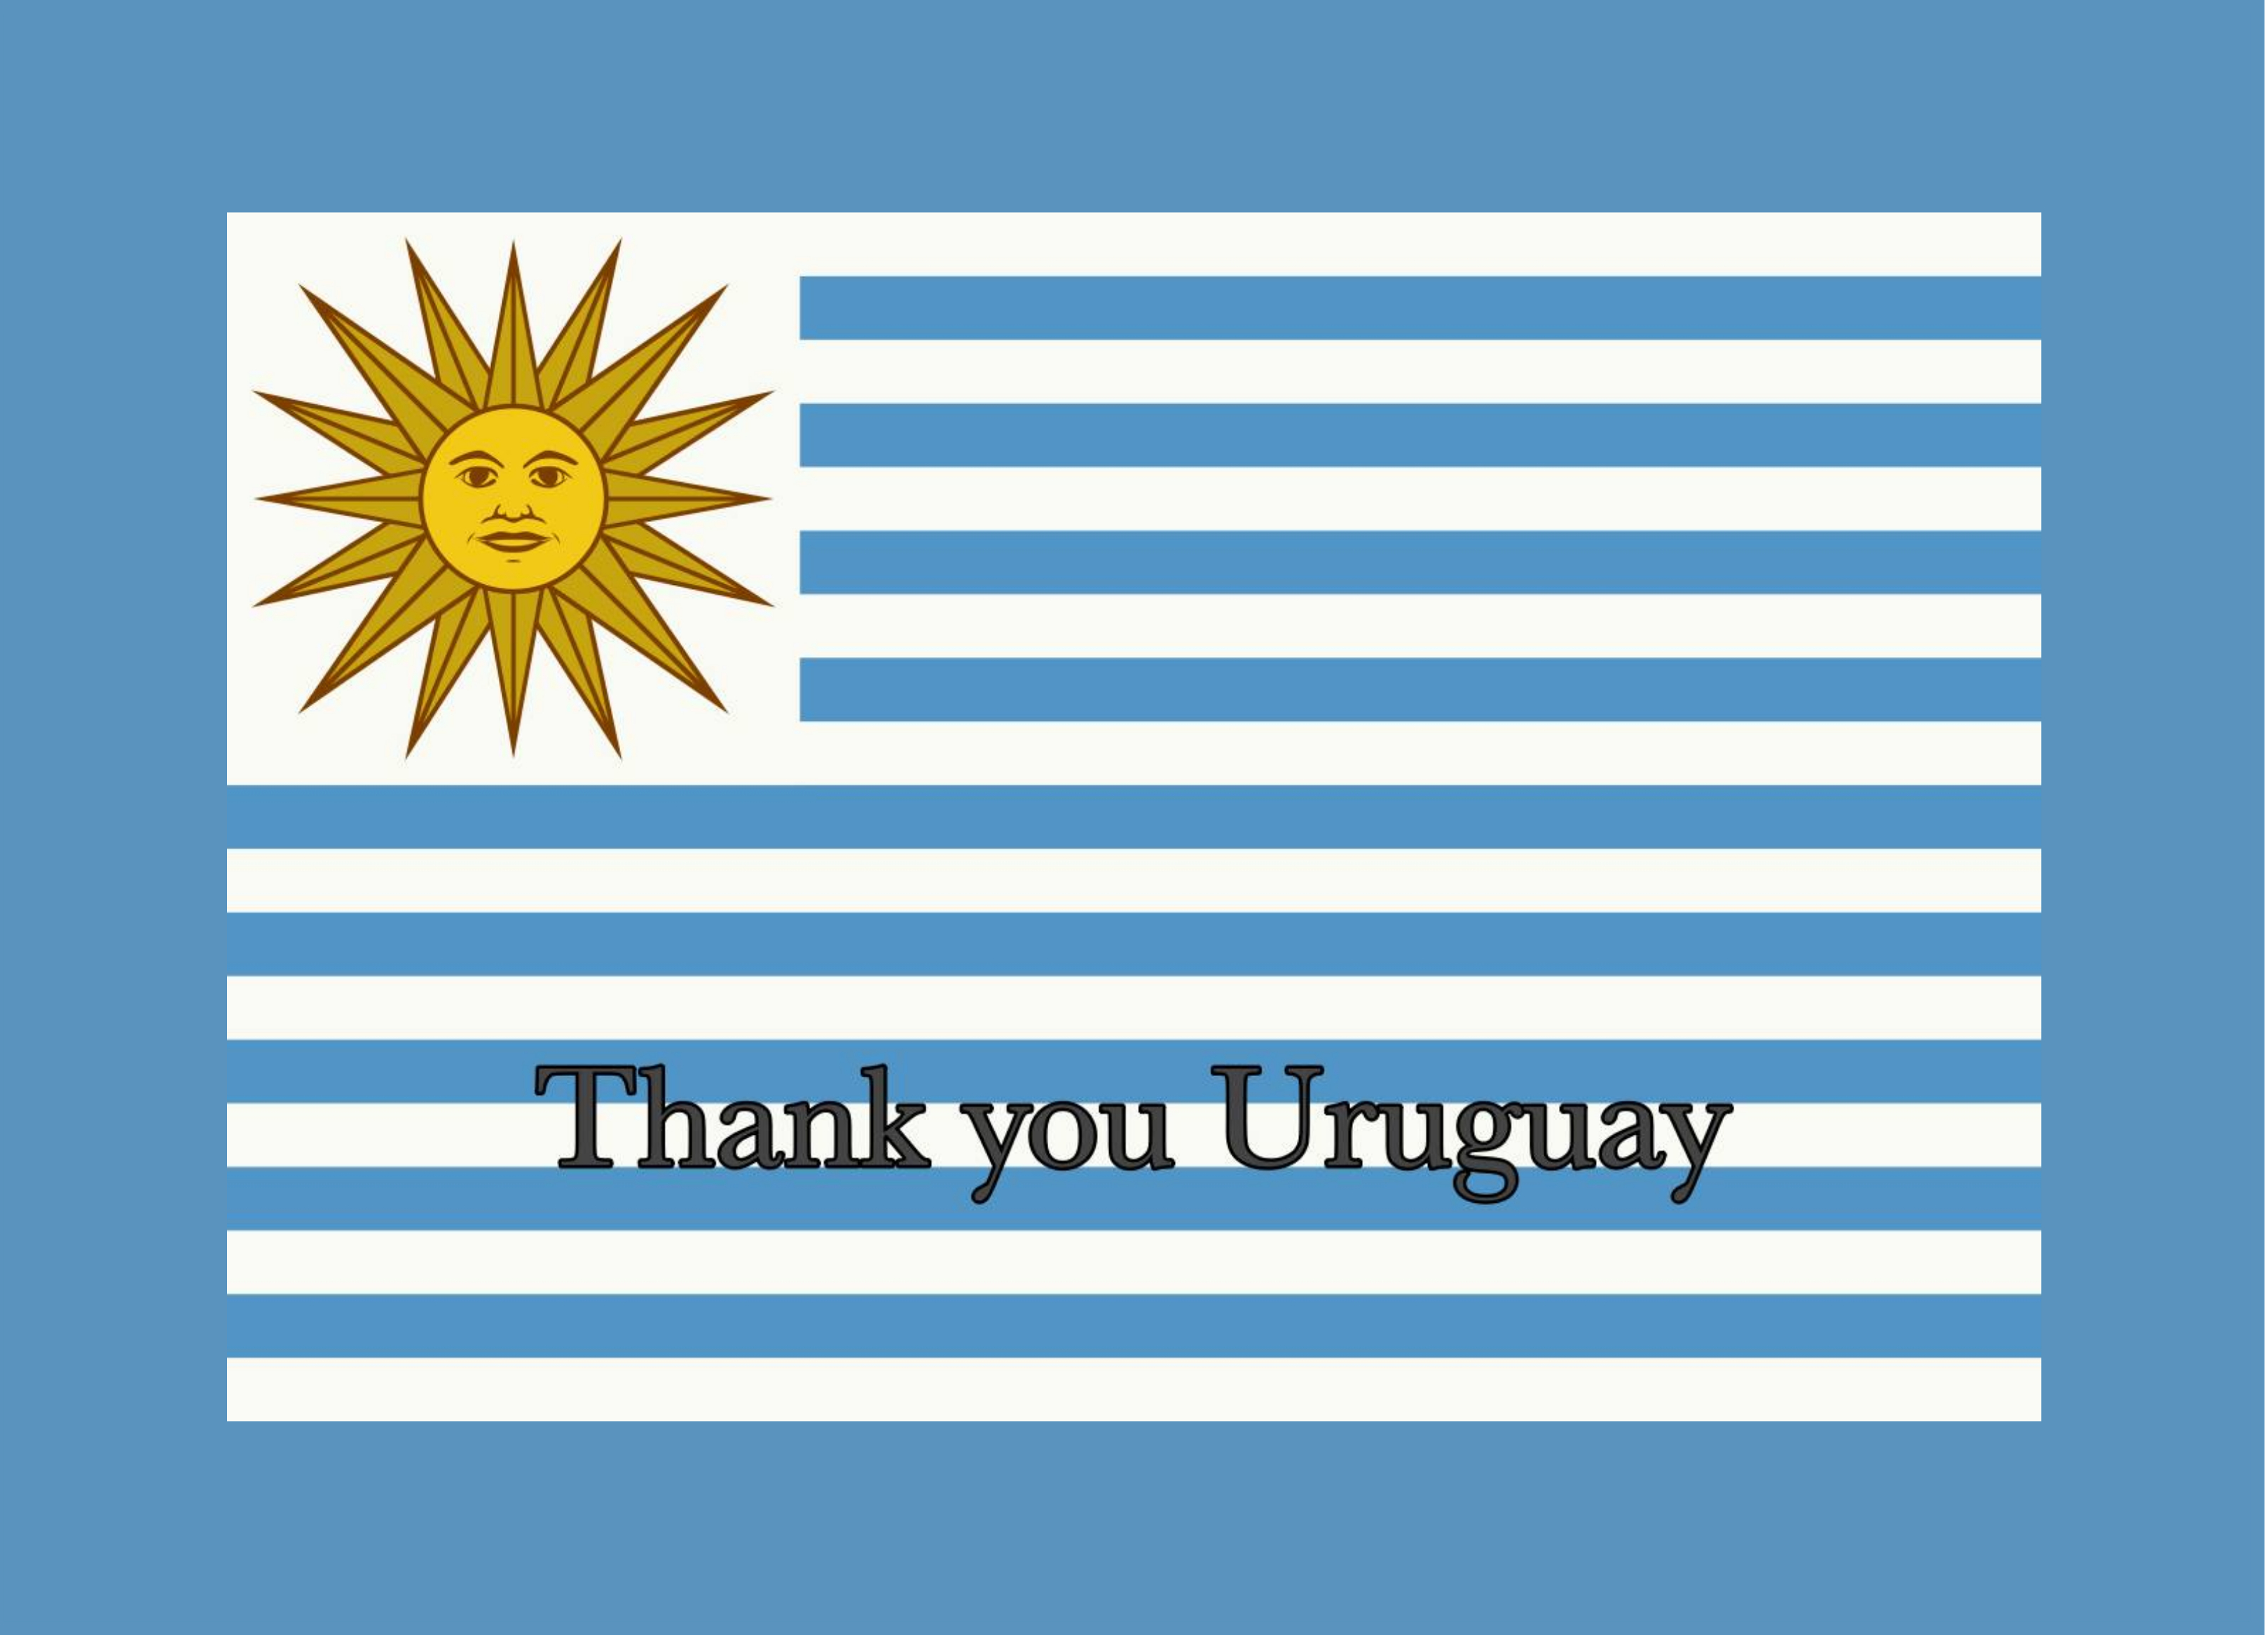 Thank you, Uruguay